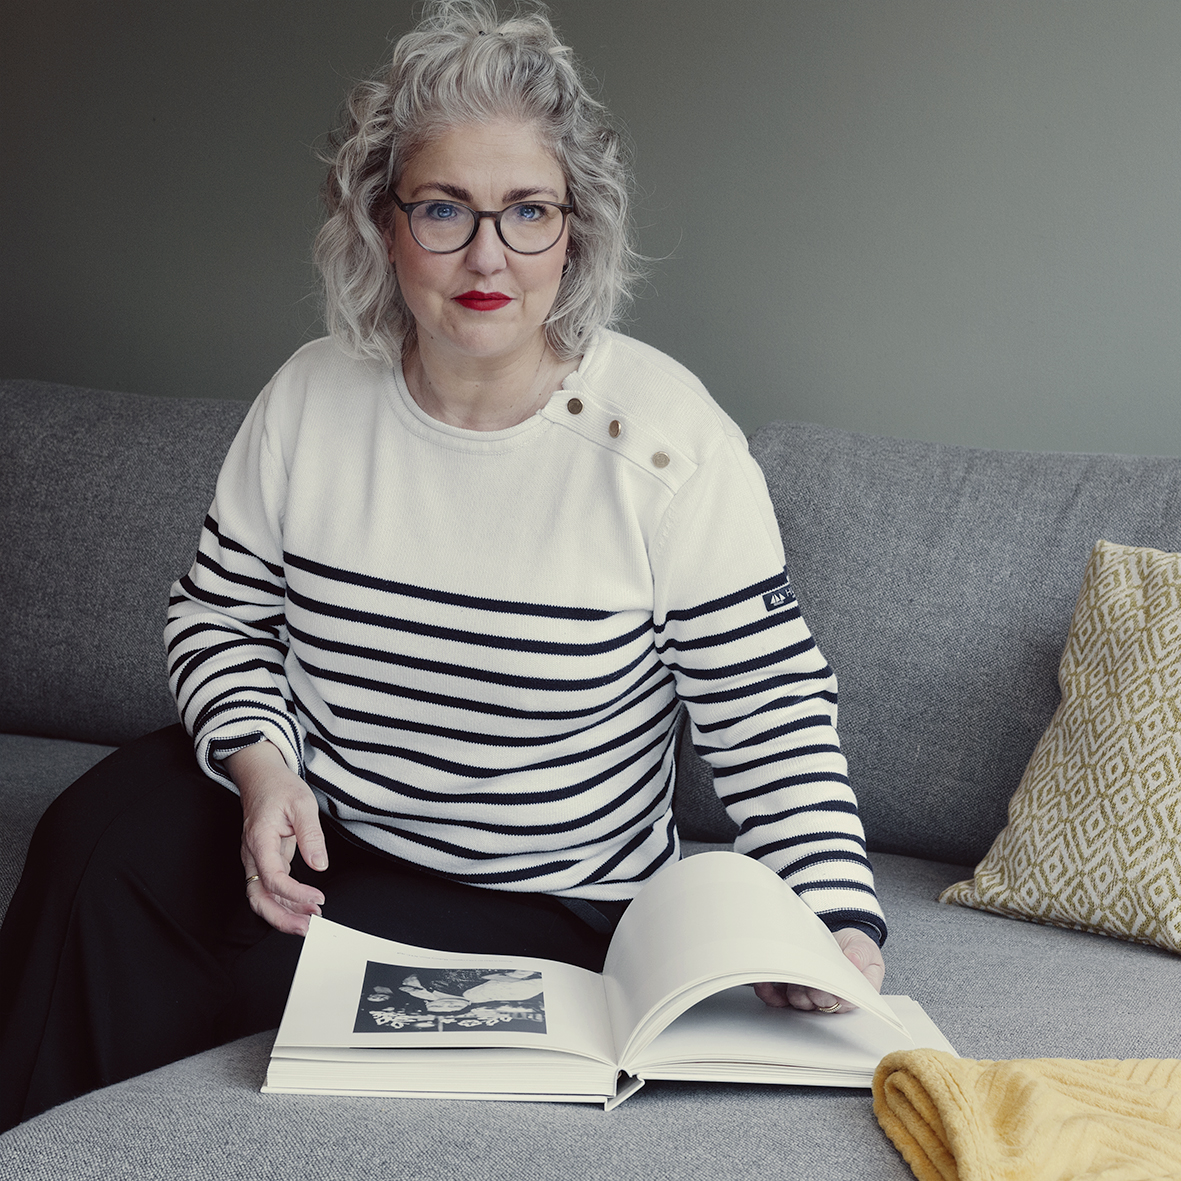 zelfportret van de fotografe Katja Diroen, zittend op een bank met een fotoboek voor zich